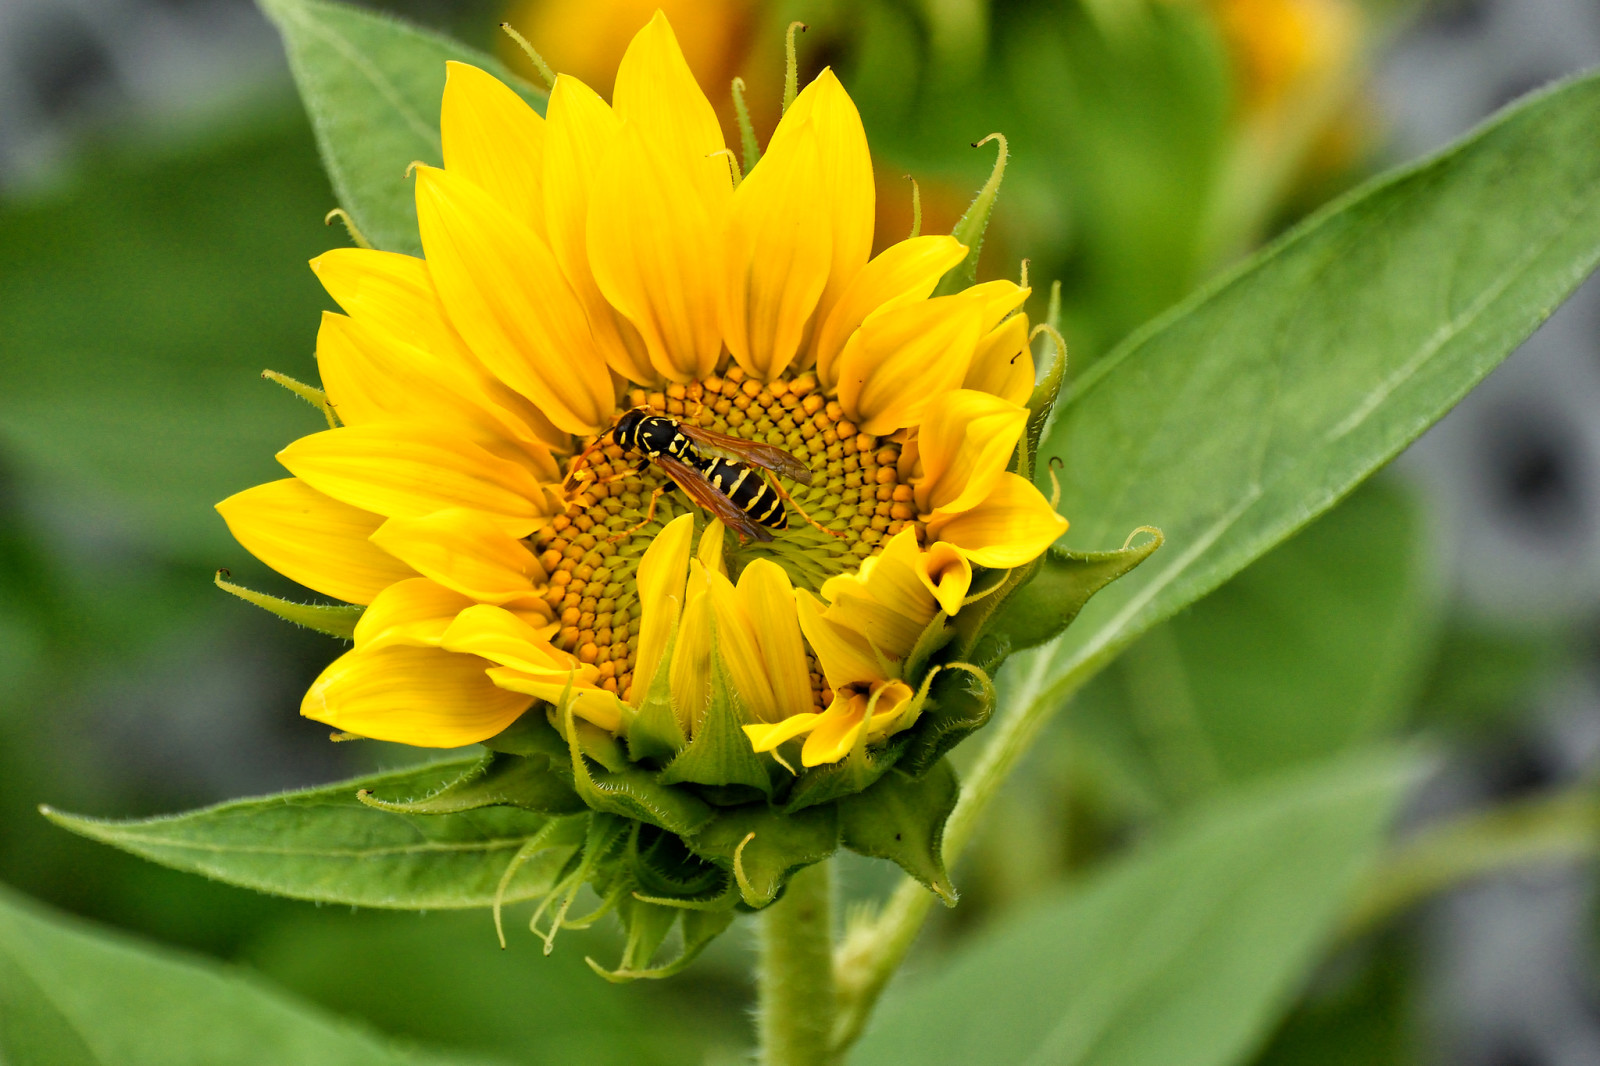 bidang, bunga, kelopak, serangga, bunga matahari, OSA